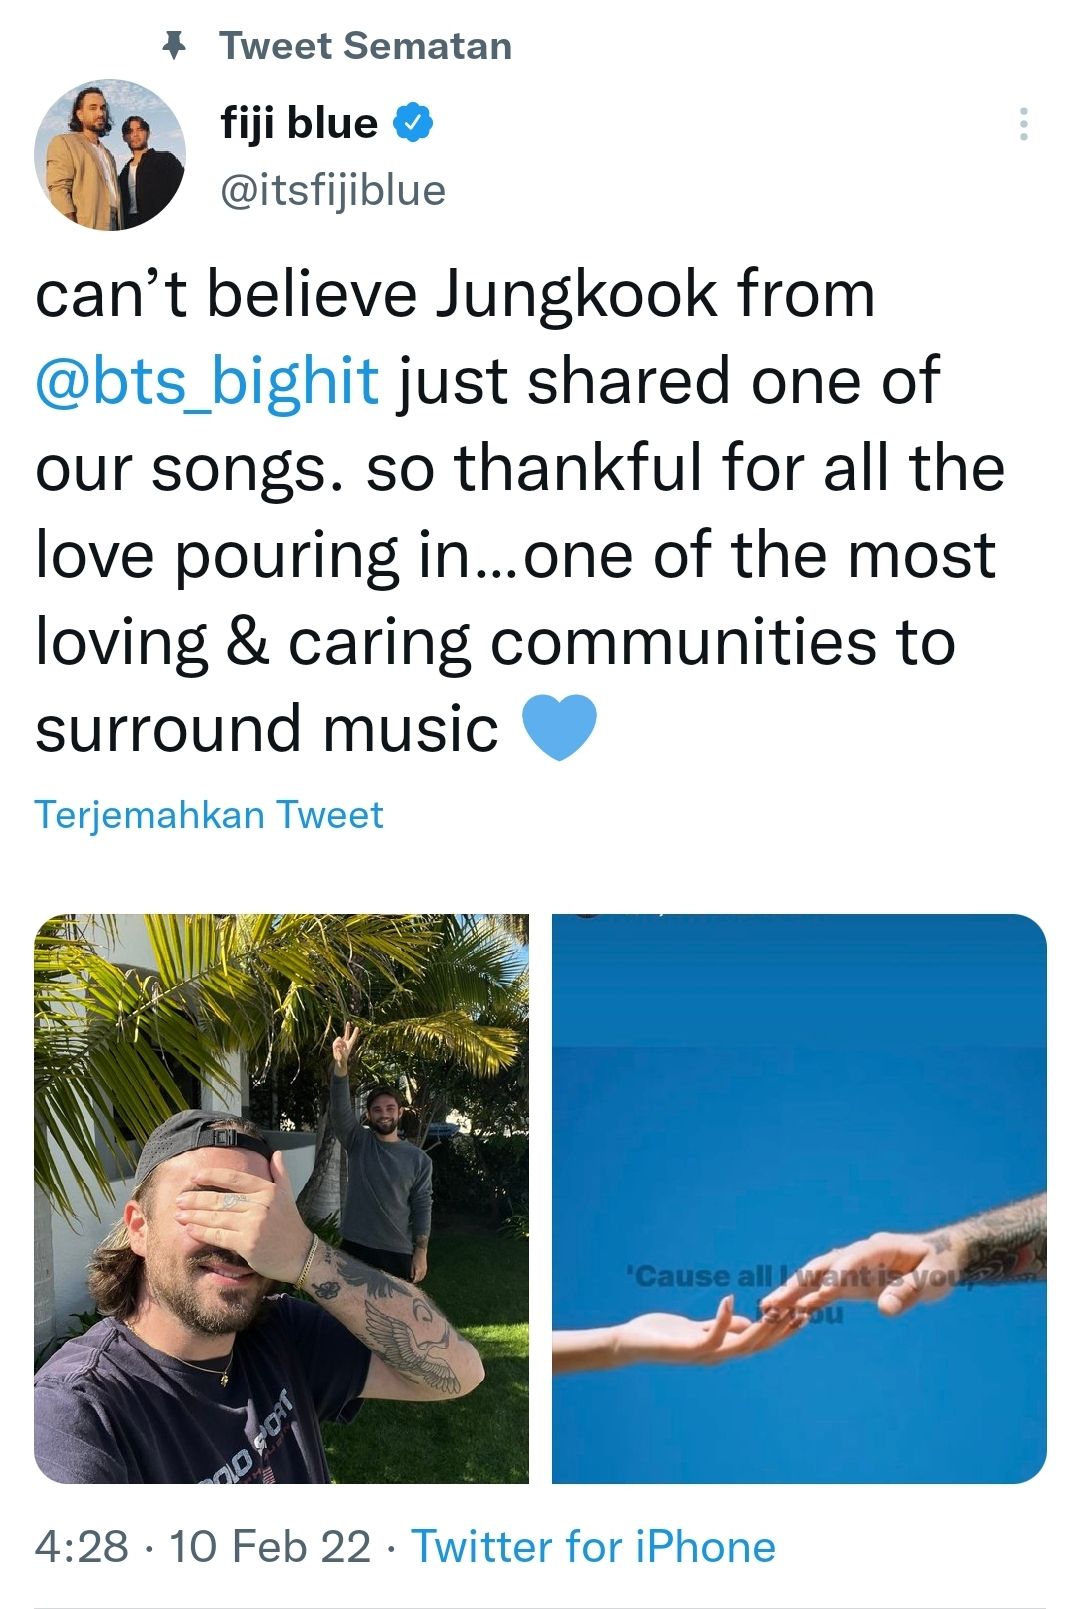 Postingan FIji Blue di Twitter mereka untuk berterima kasih kepada Jungkook BTS.